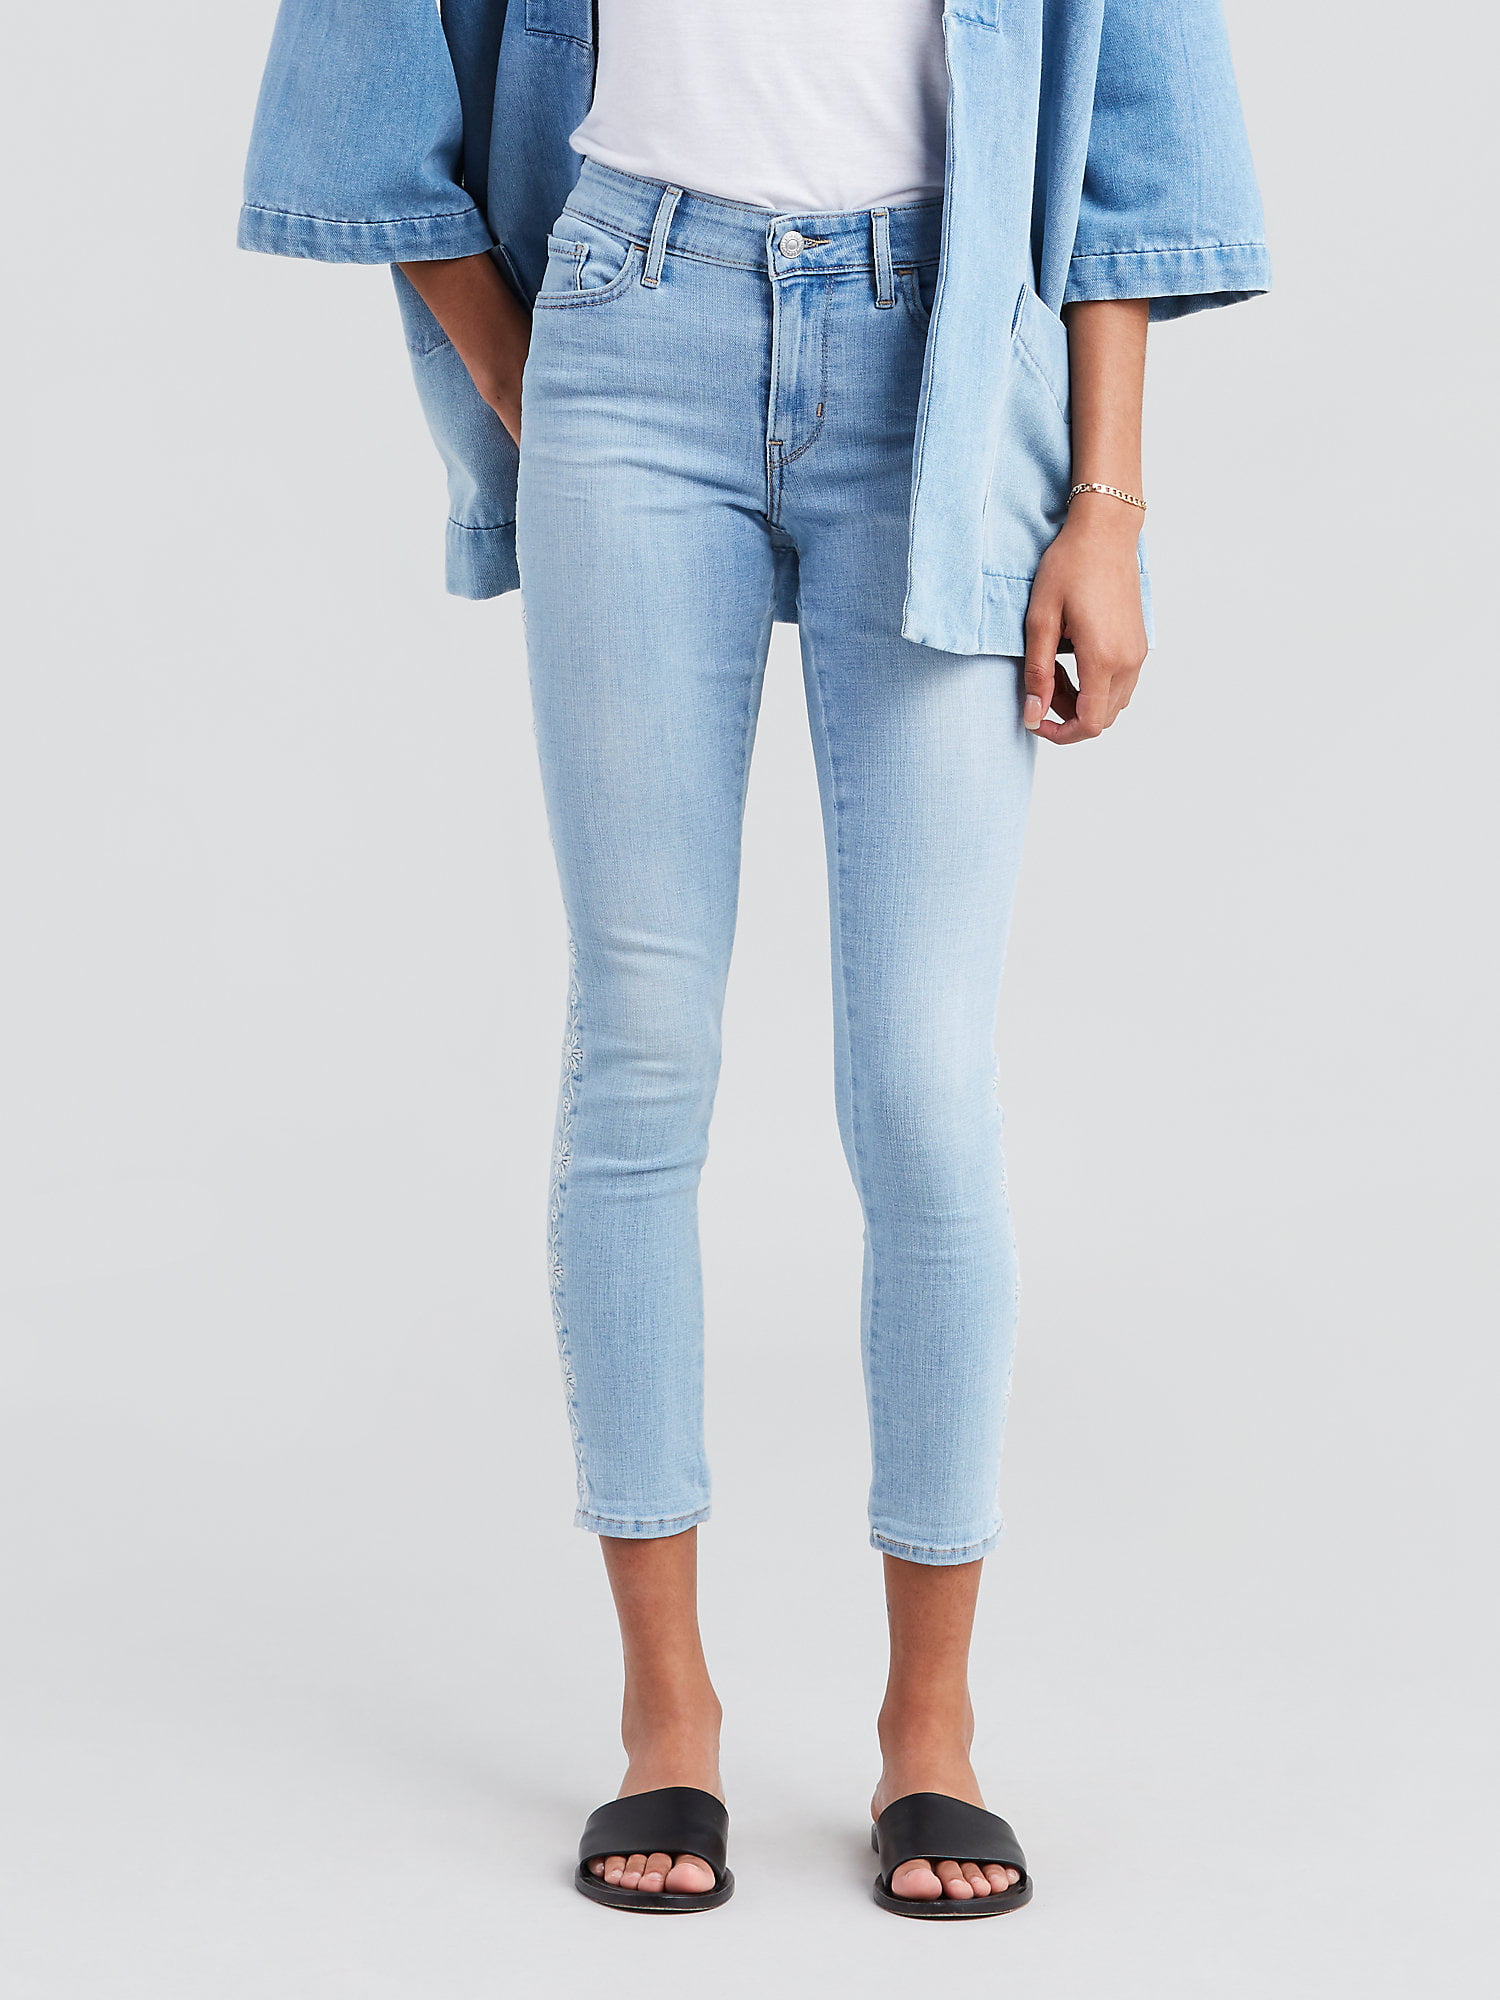 Buy > levi's 711 skinny ankle jeans > in stock